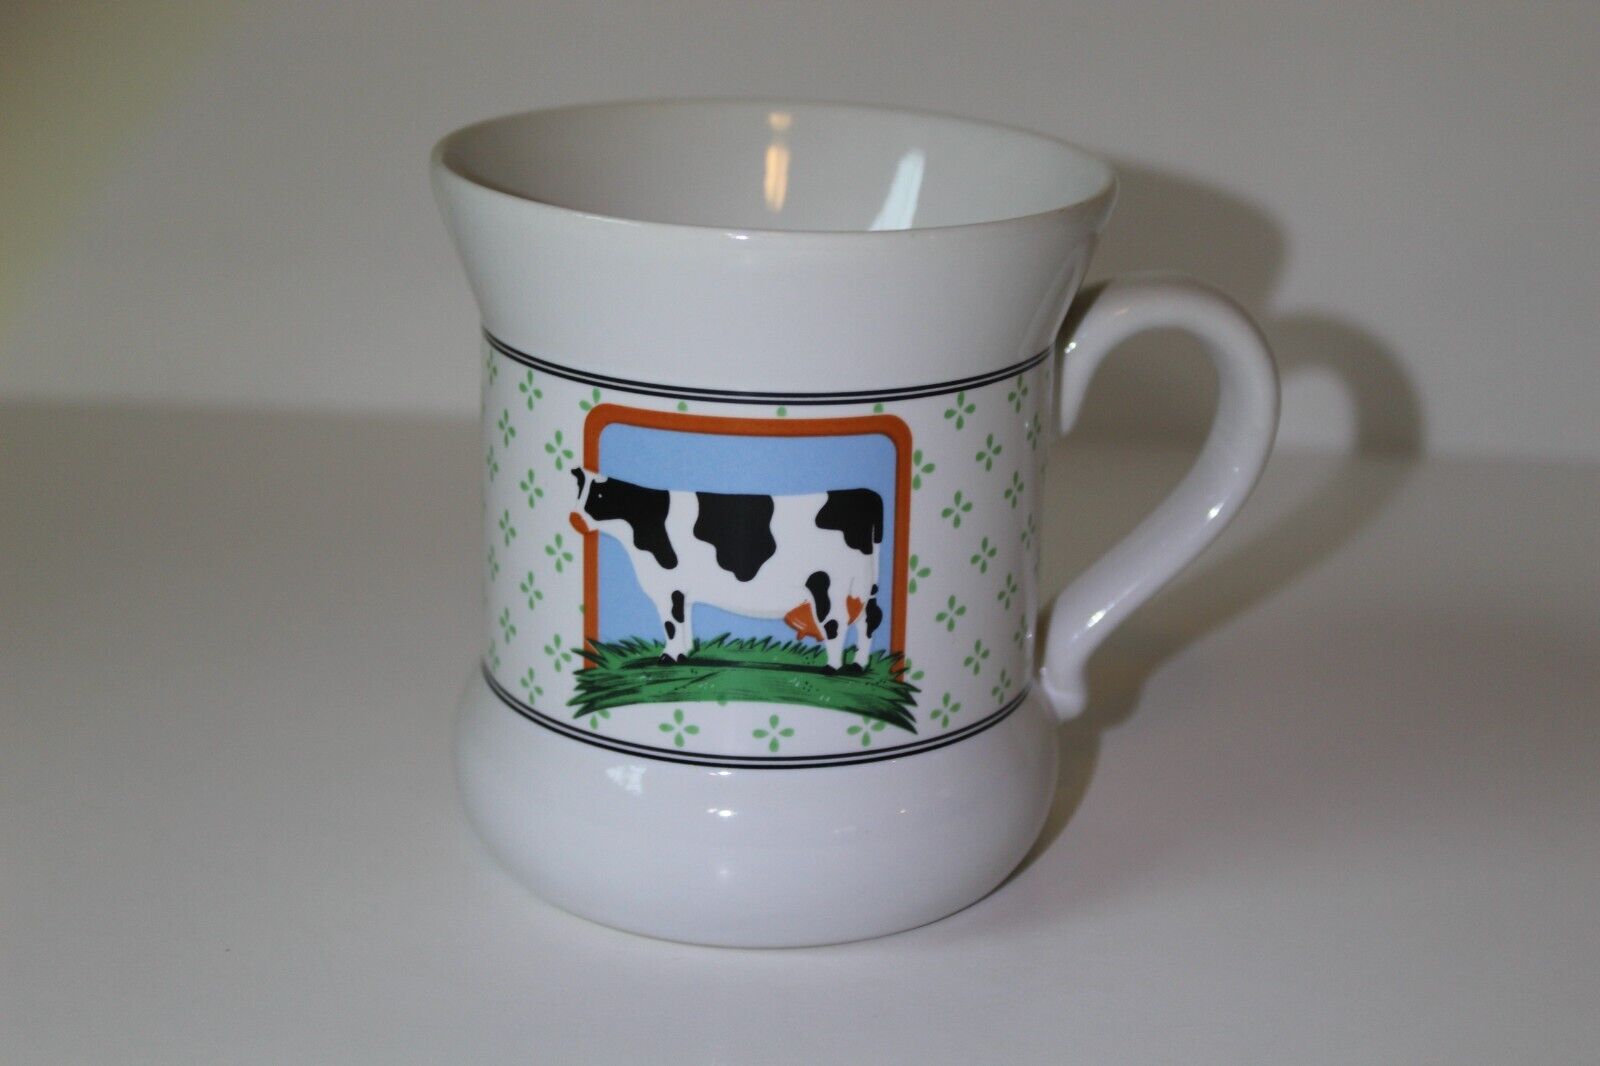 Vintage 1981 Vandor Country Collections Pelzman Designs 10 oz Ceramic Coffee Mug